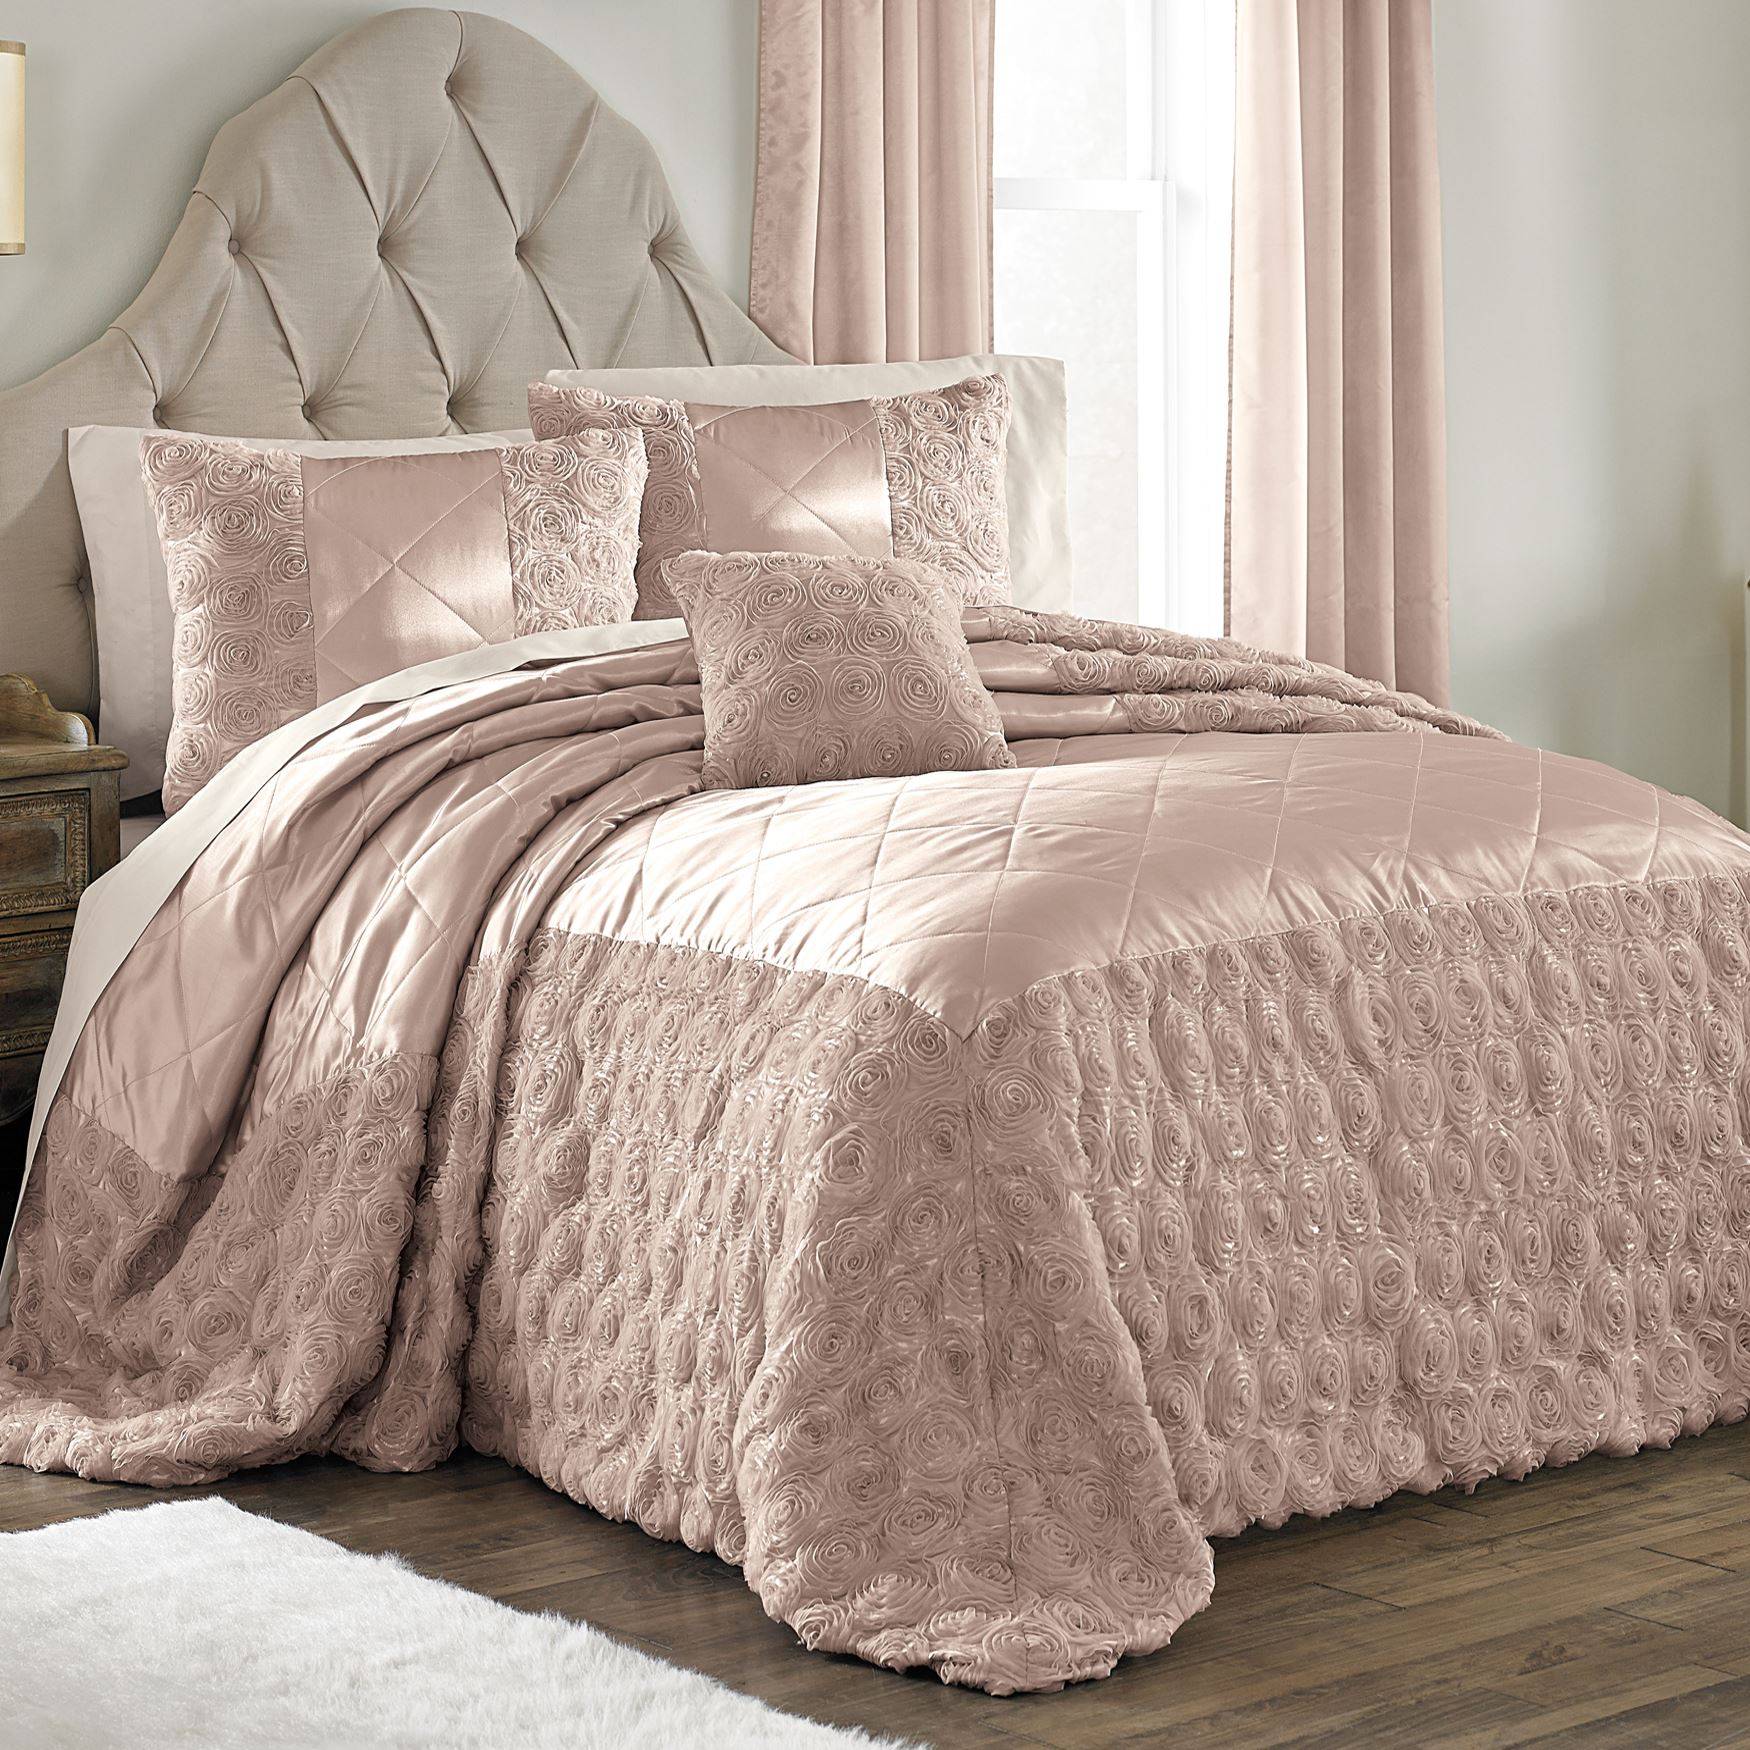 Покрывало на кровать: искусственный мех. стоит ли брать в спальню? | текстильпрофи - полезные материалы о домашнем текстиле